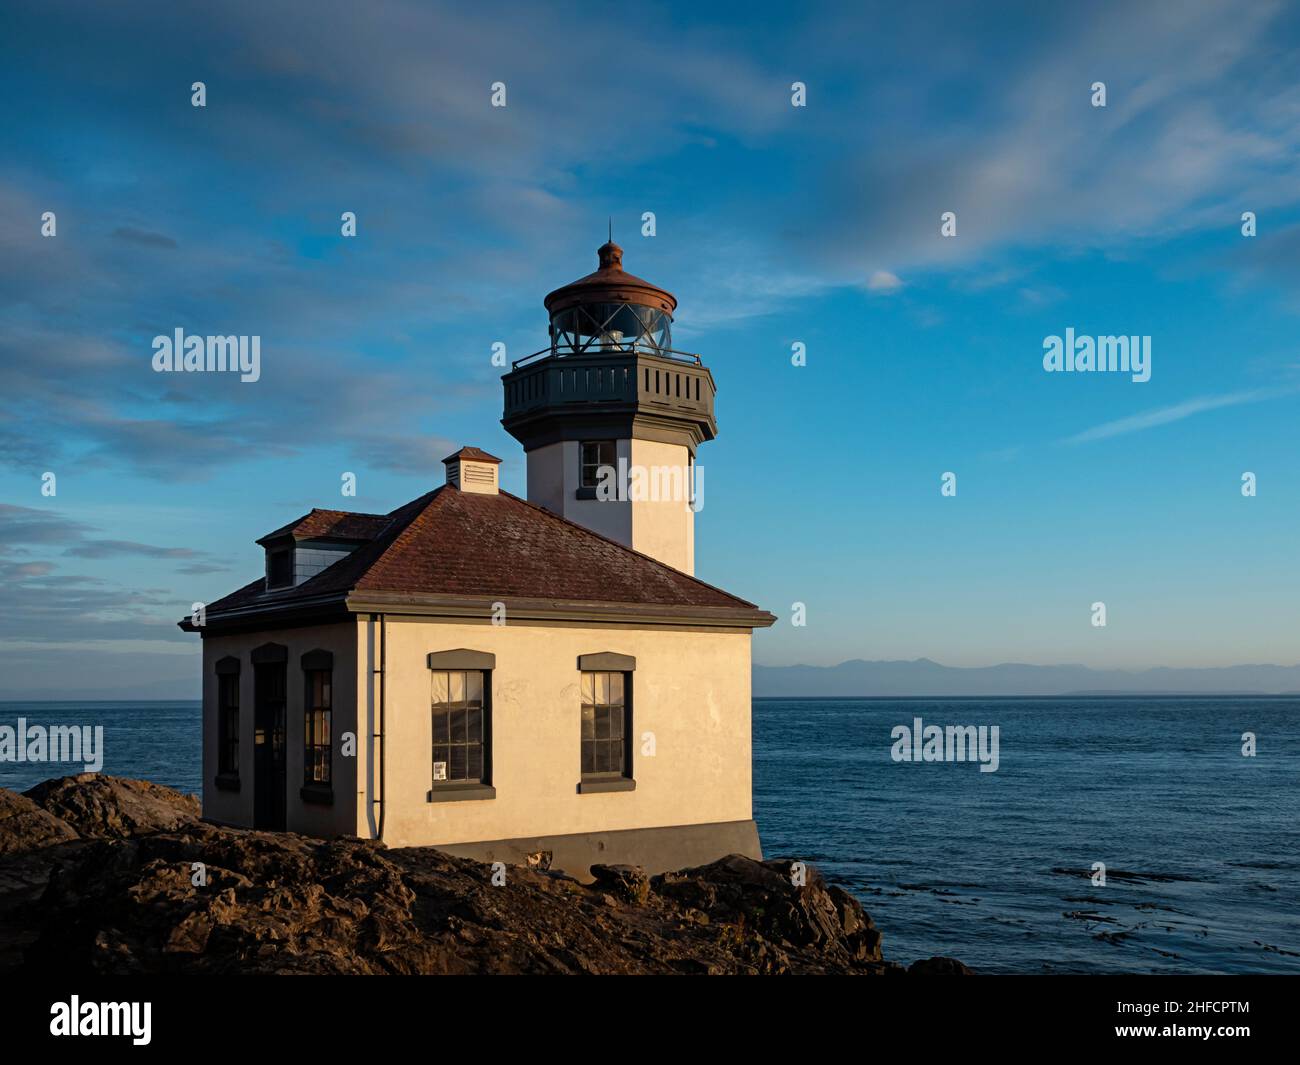 WA21120-00...WASHINGTON - Limed Kiln Lighthouse das Hotel liegt am Ufer der Haro Strait und ist eines der beliebtesten Walbeobachtungsgebiete von San Juan Stockfoto